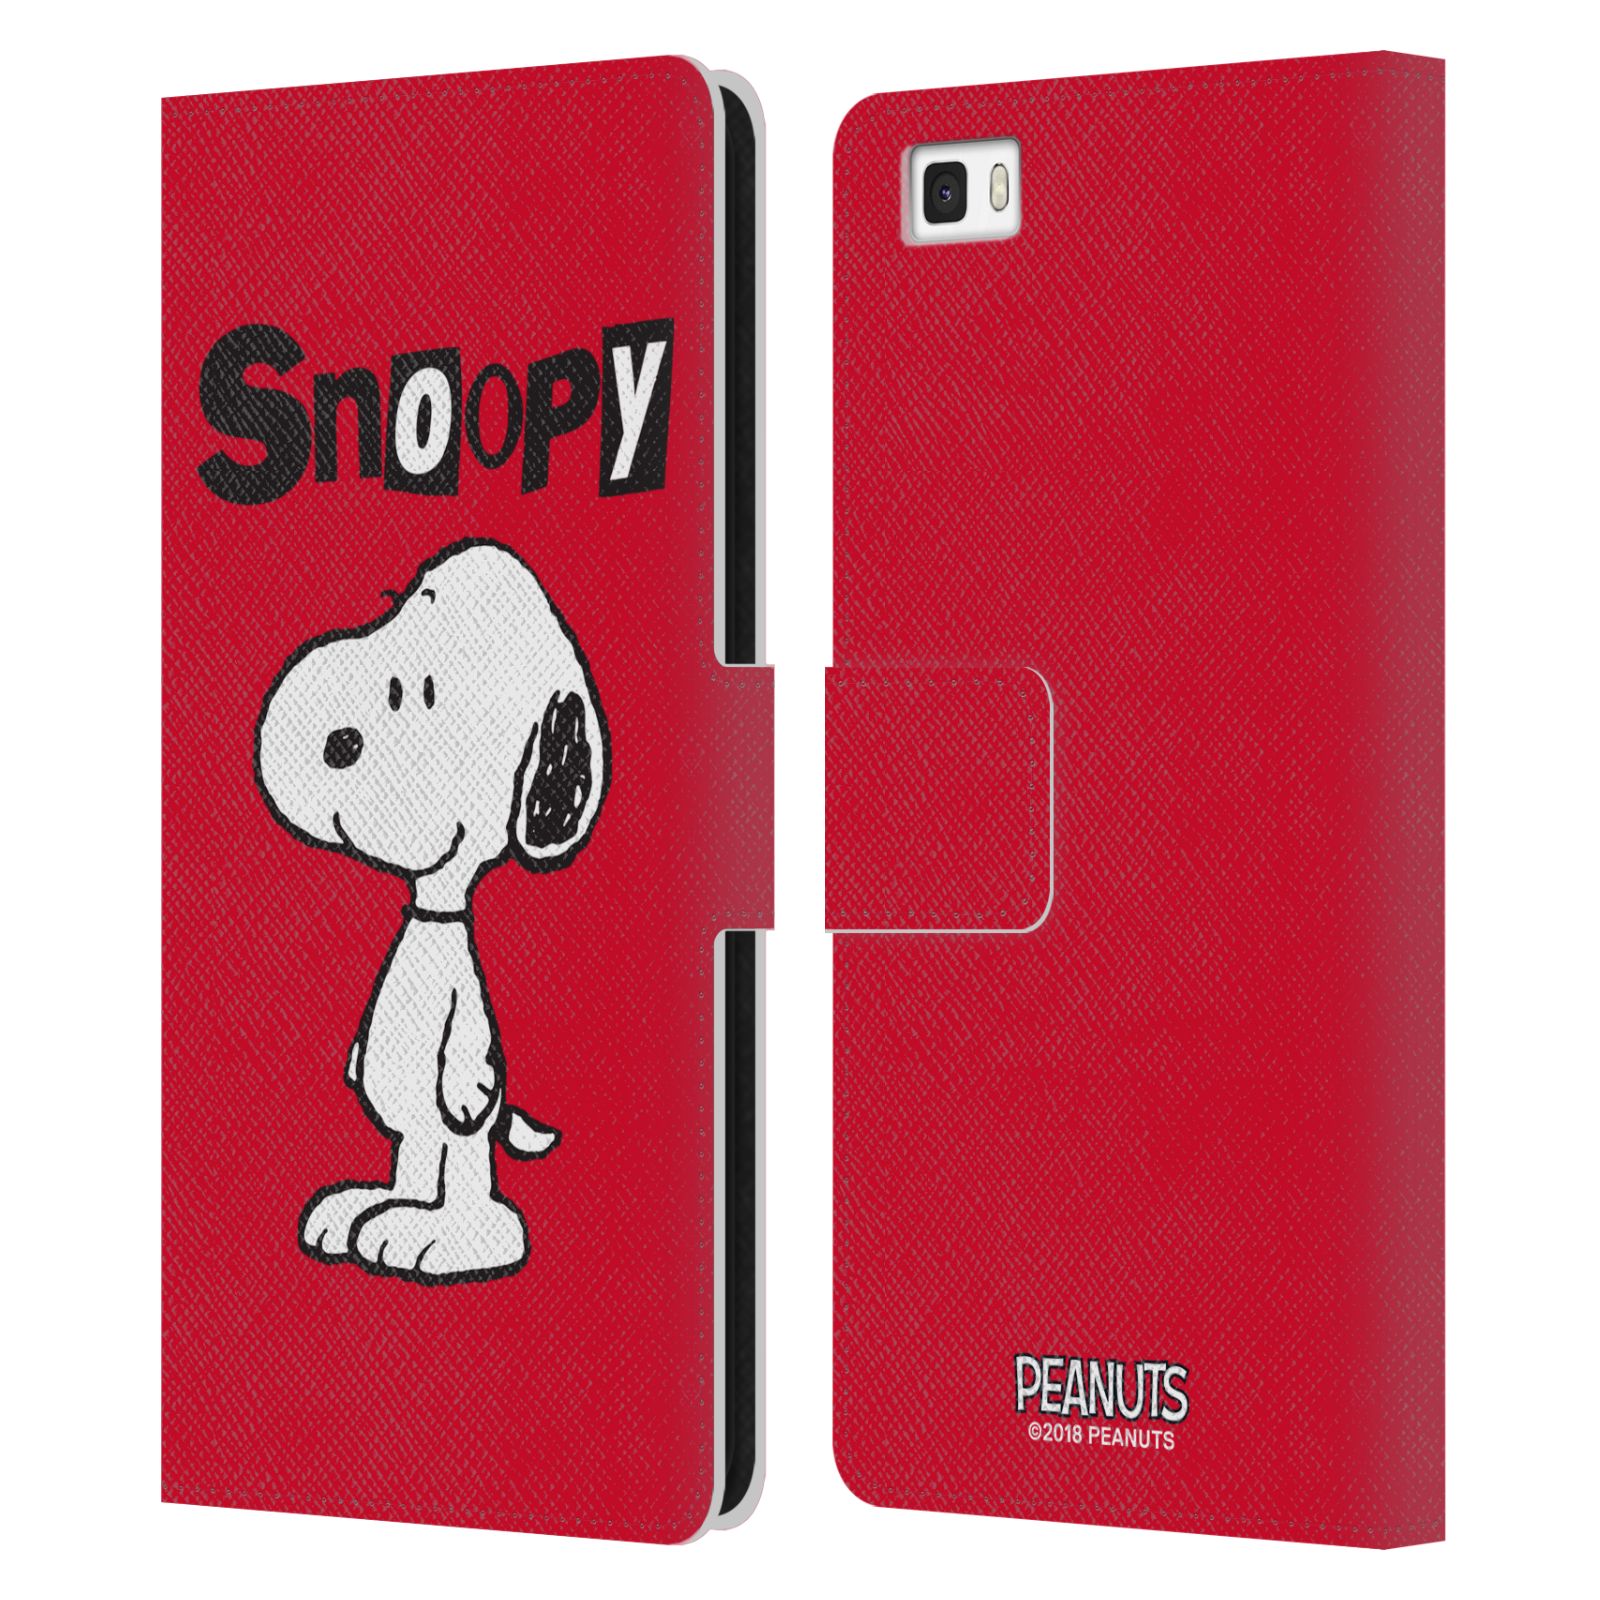 Pouzdro na mobil Huawei P8 LITE - HEAD CASE - Peanuts - Snoopy červená